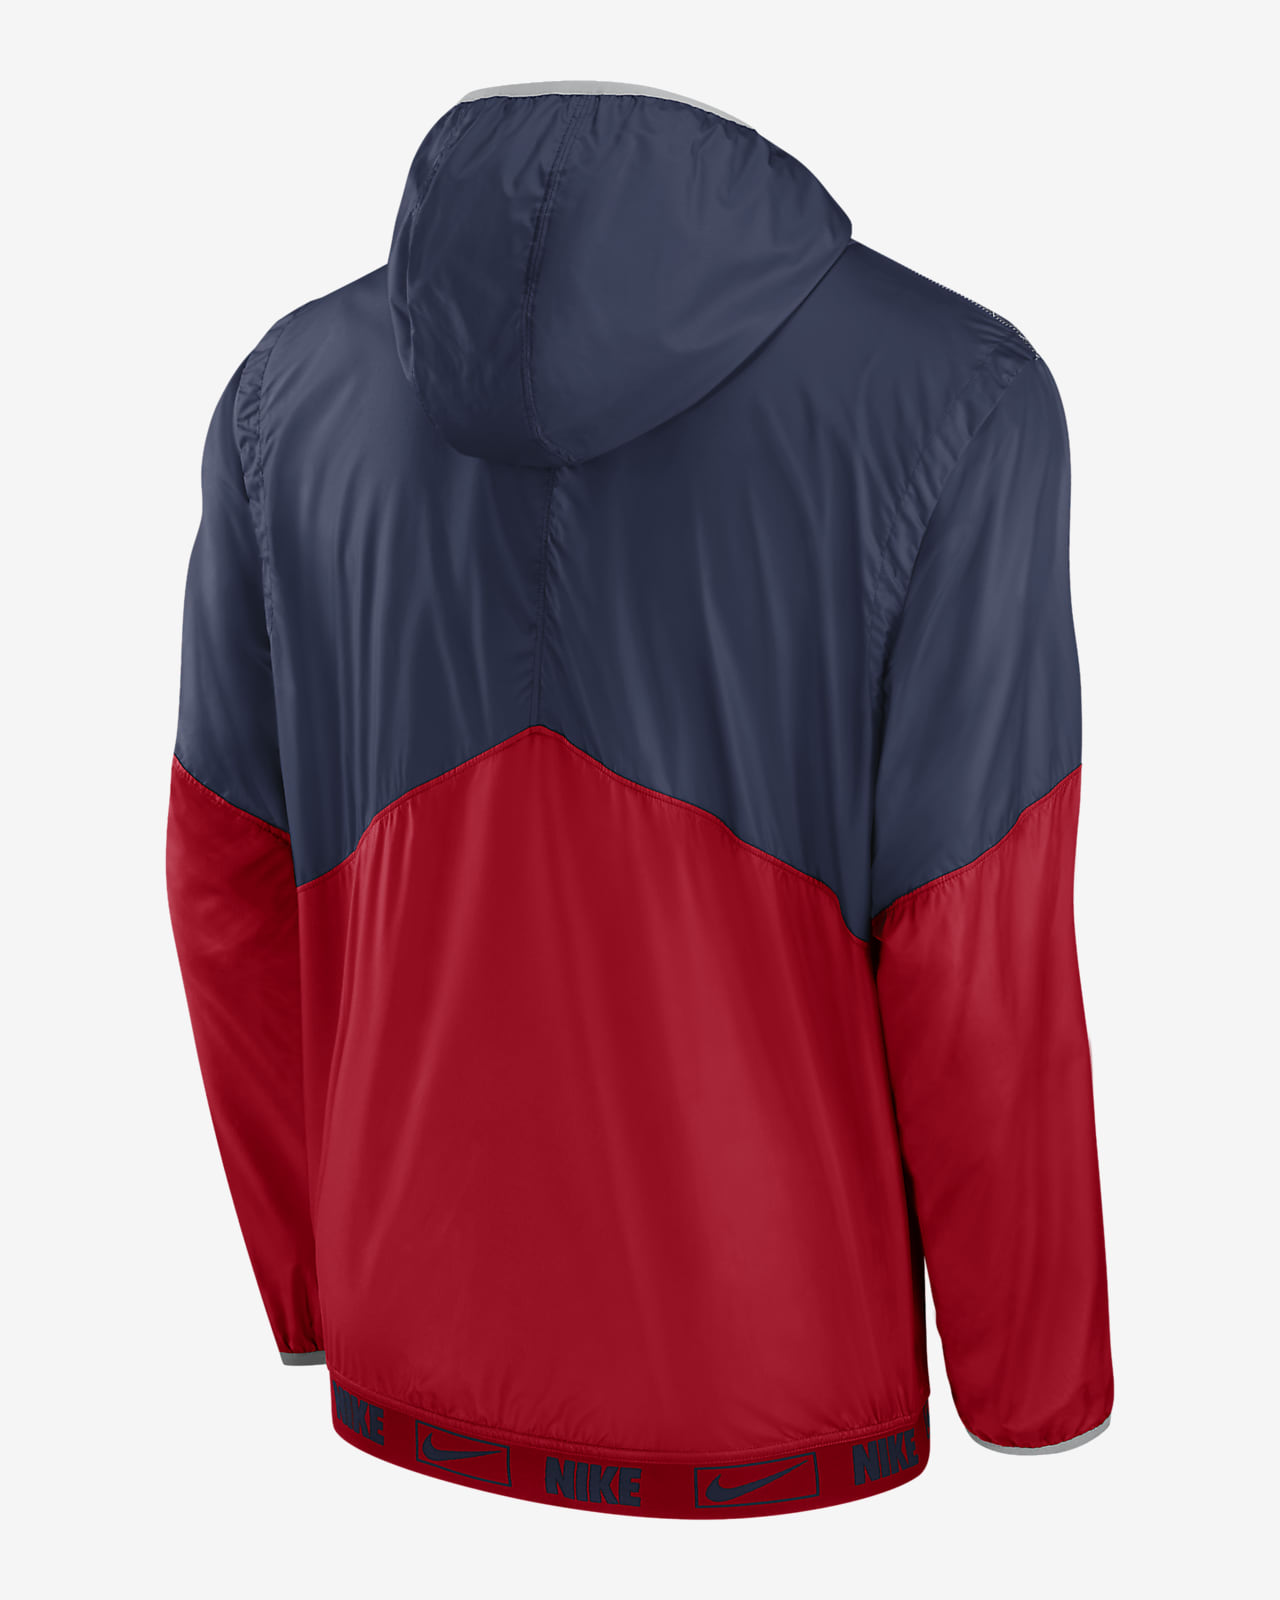 Nike 1/4 St Louis Cardinals short sleeve hoodie SZ LRG NWOT